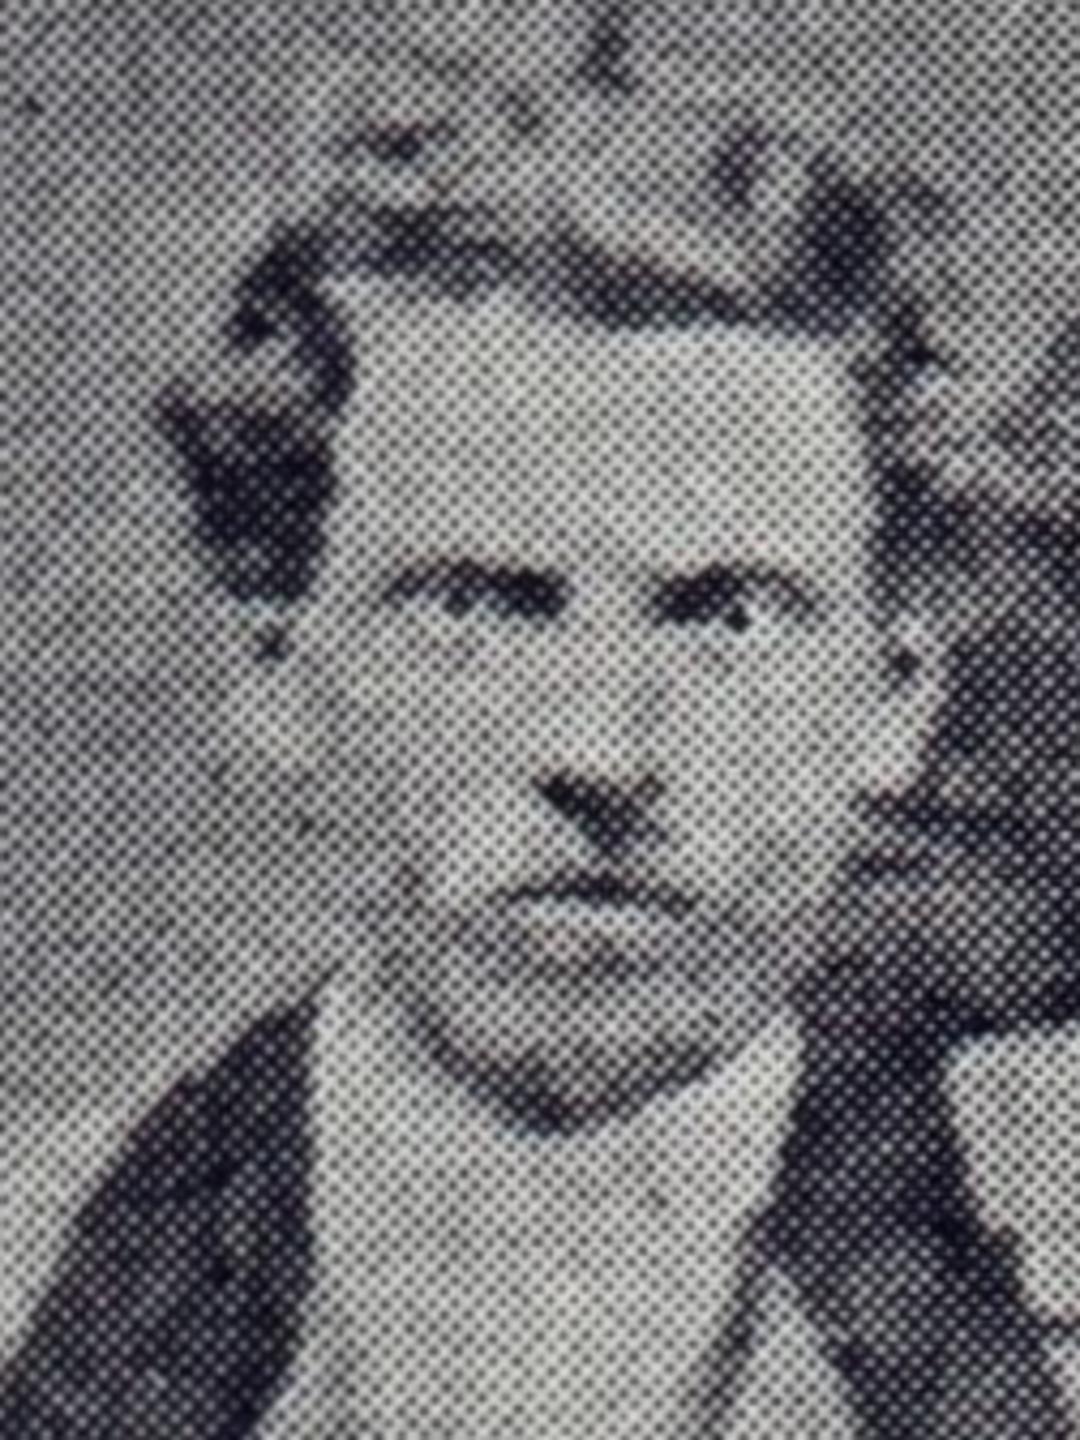 Warren Edgar Davis (1848 - 1926) Profile